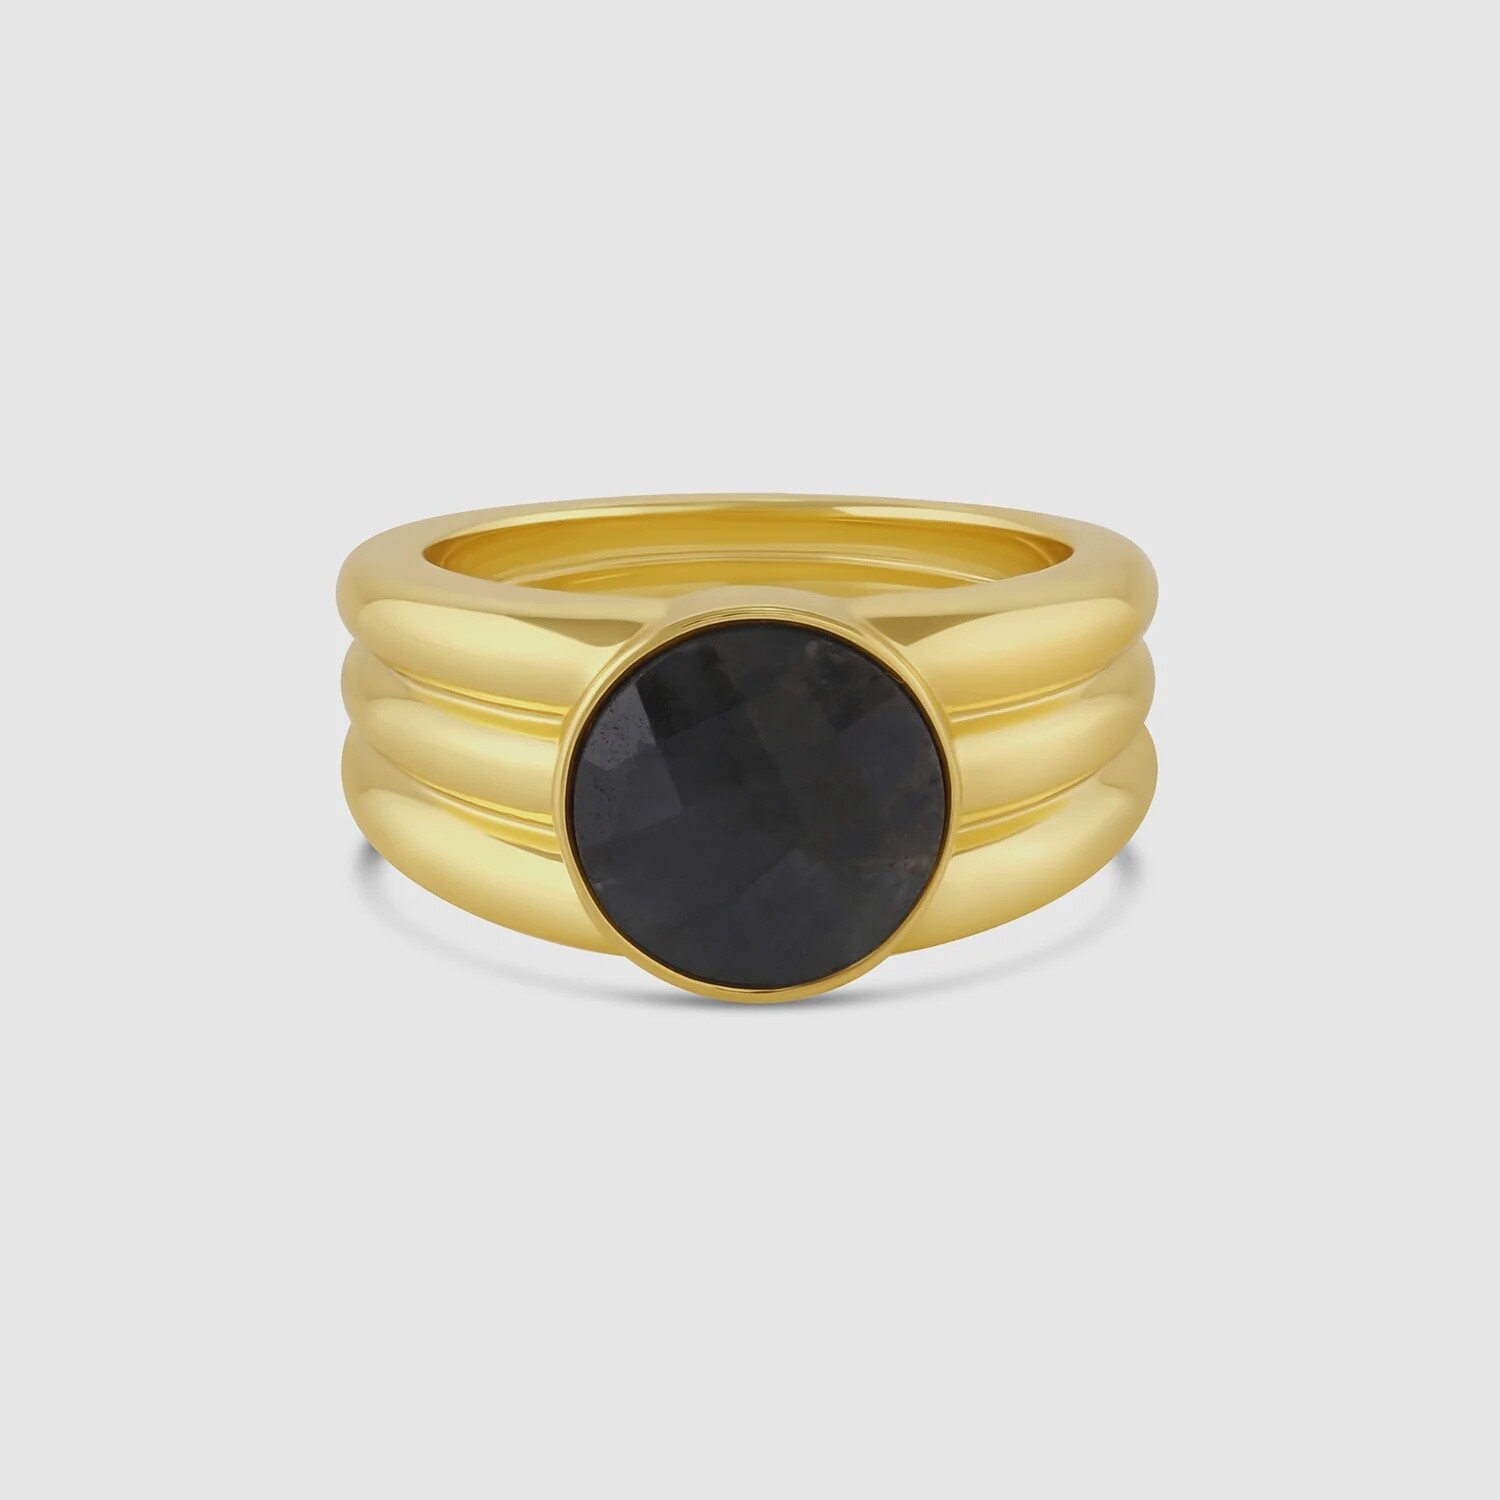 Power Gemstone Reed Ring for Balance - Gold / Labradorite / 7